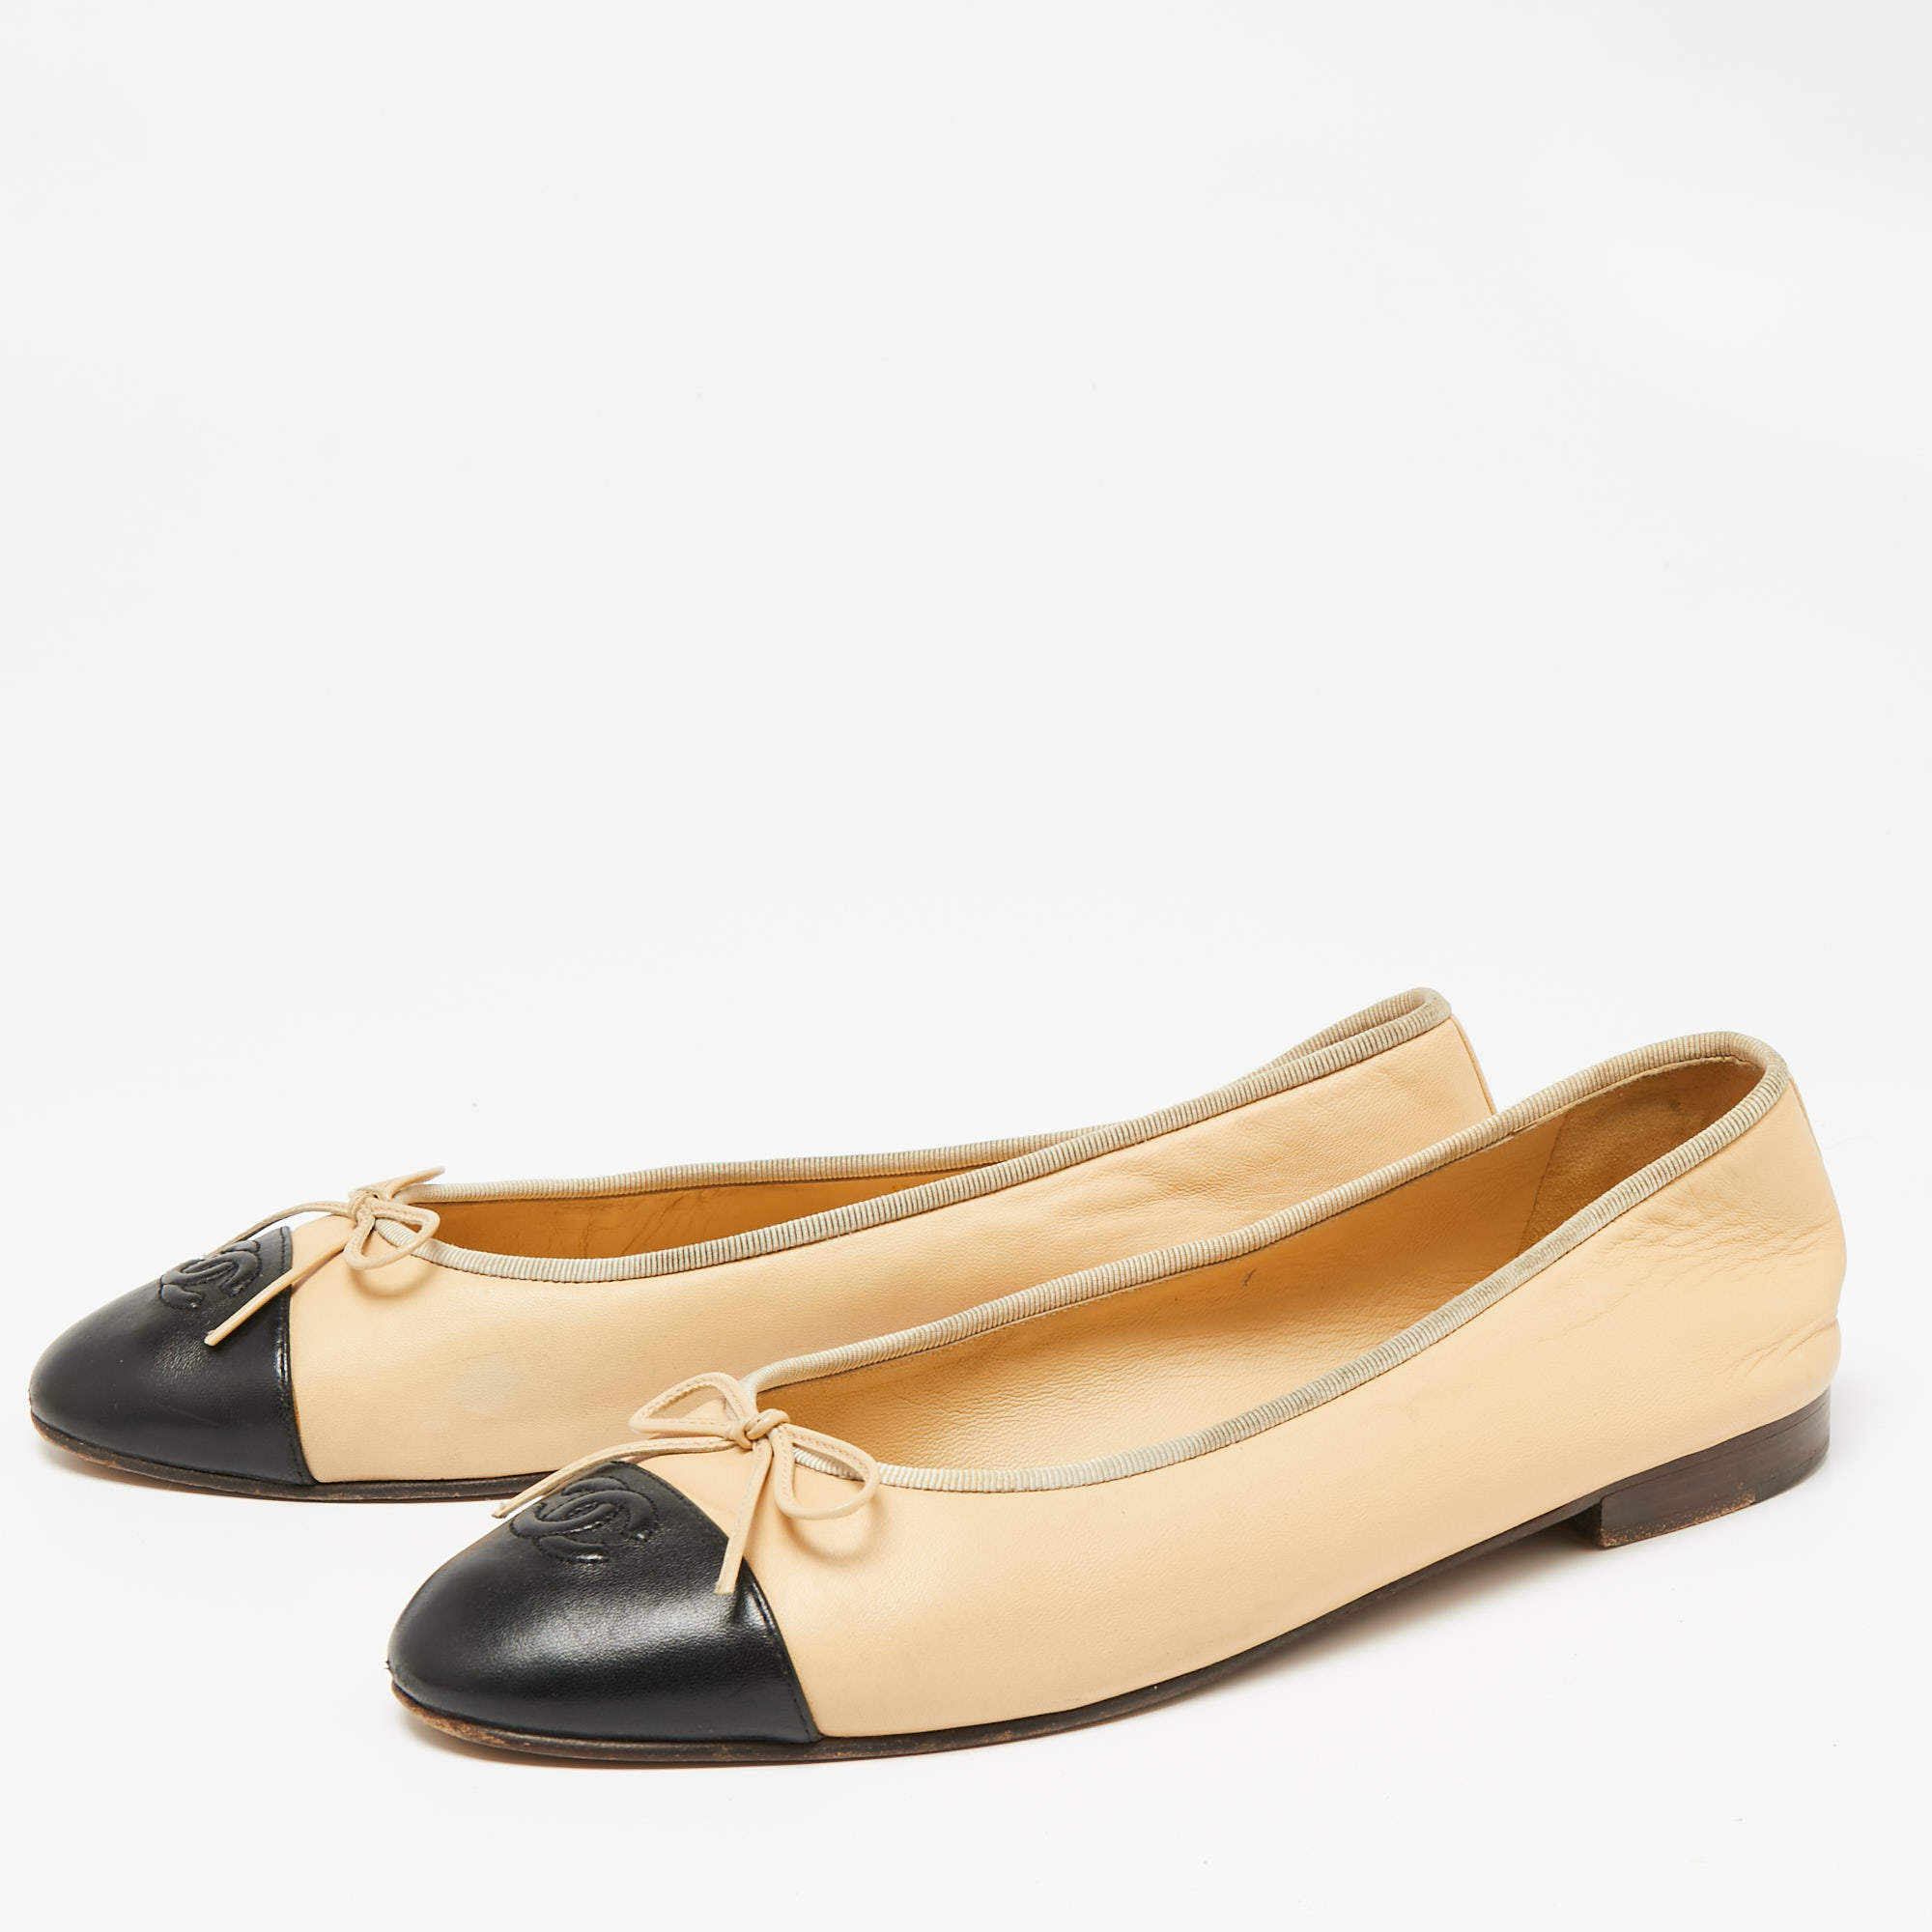 Chanel Beige/Black Leather CC Cap-Toe Bow Ballet Flats Size 41.5